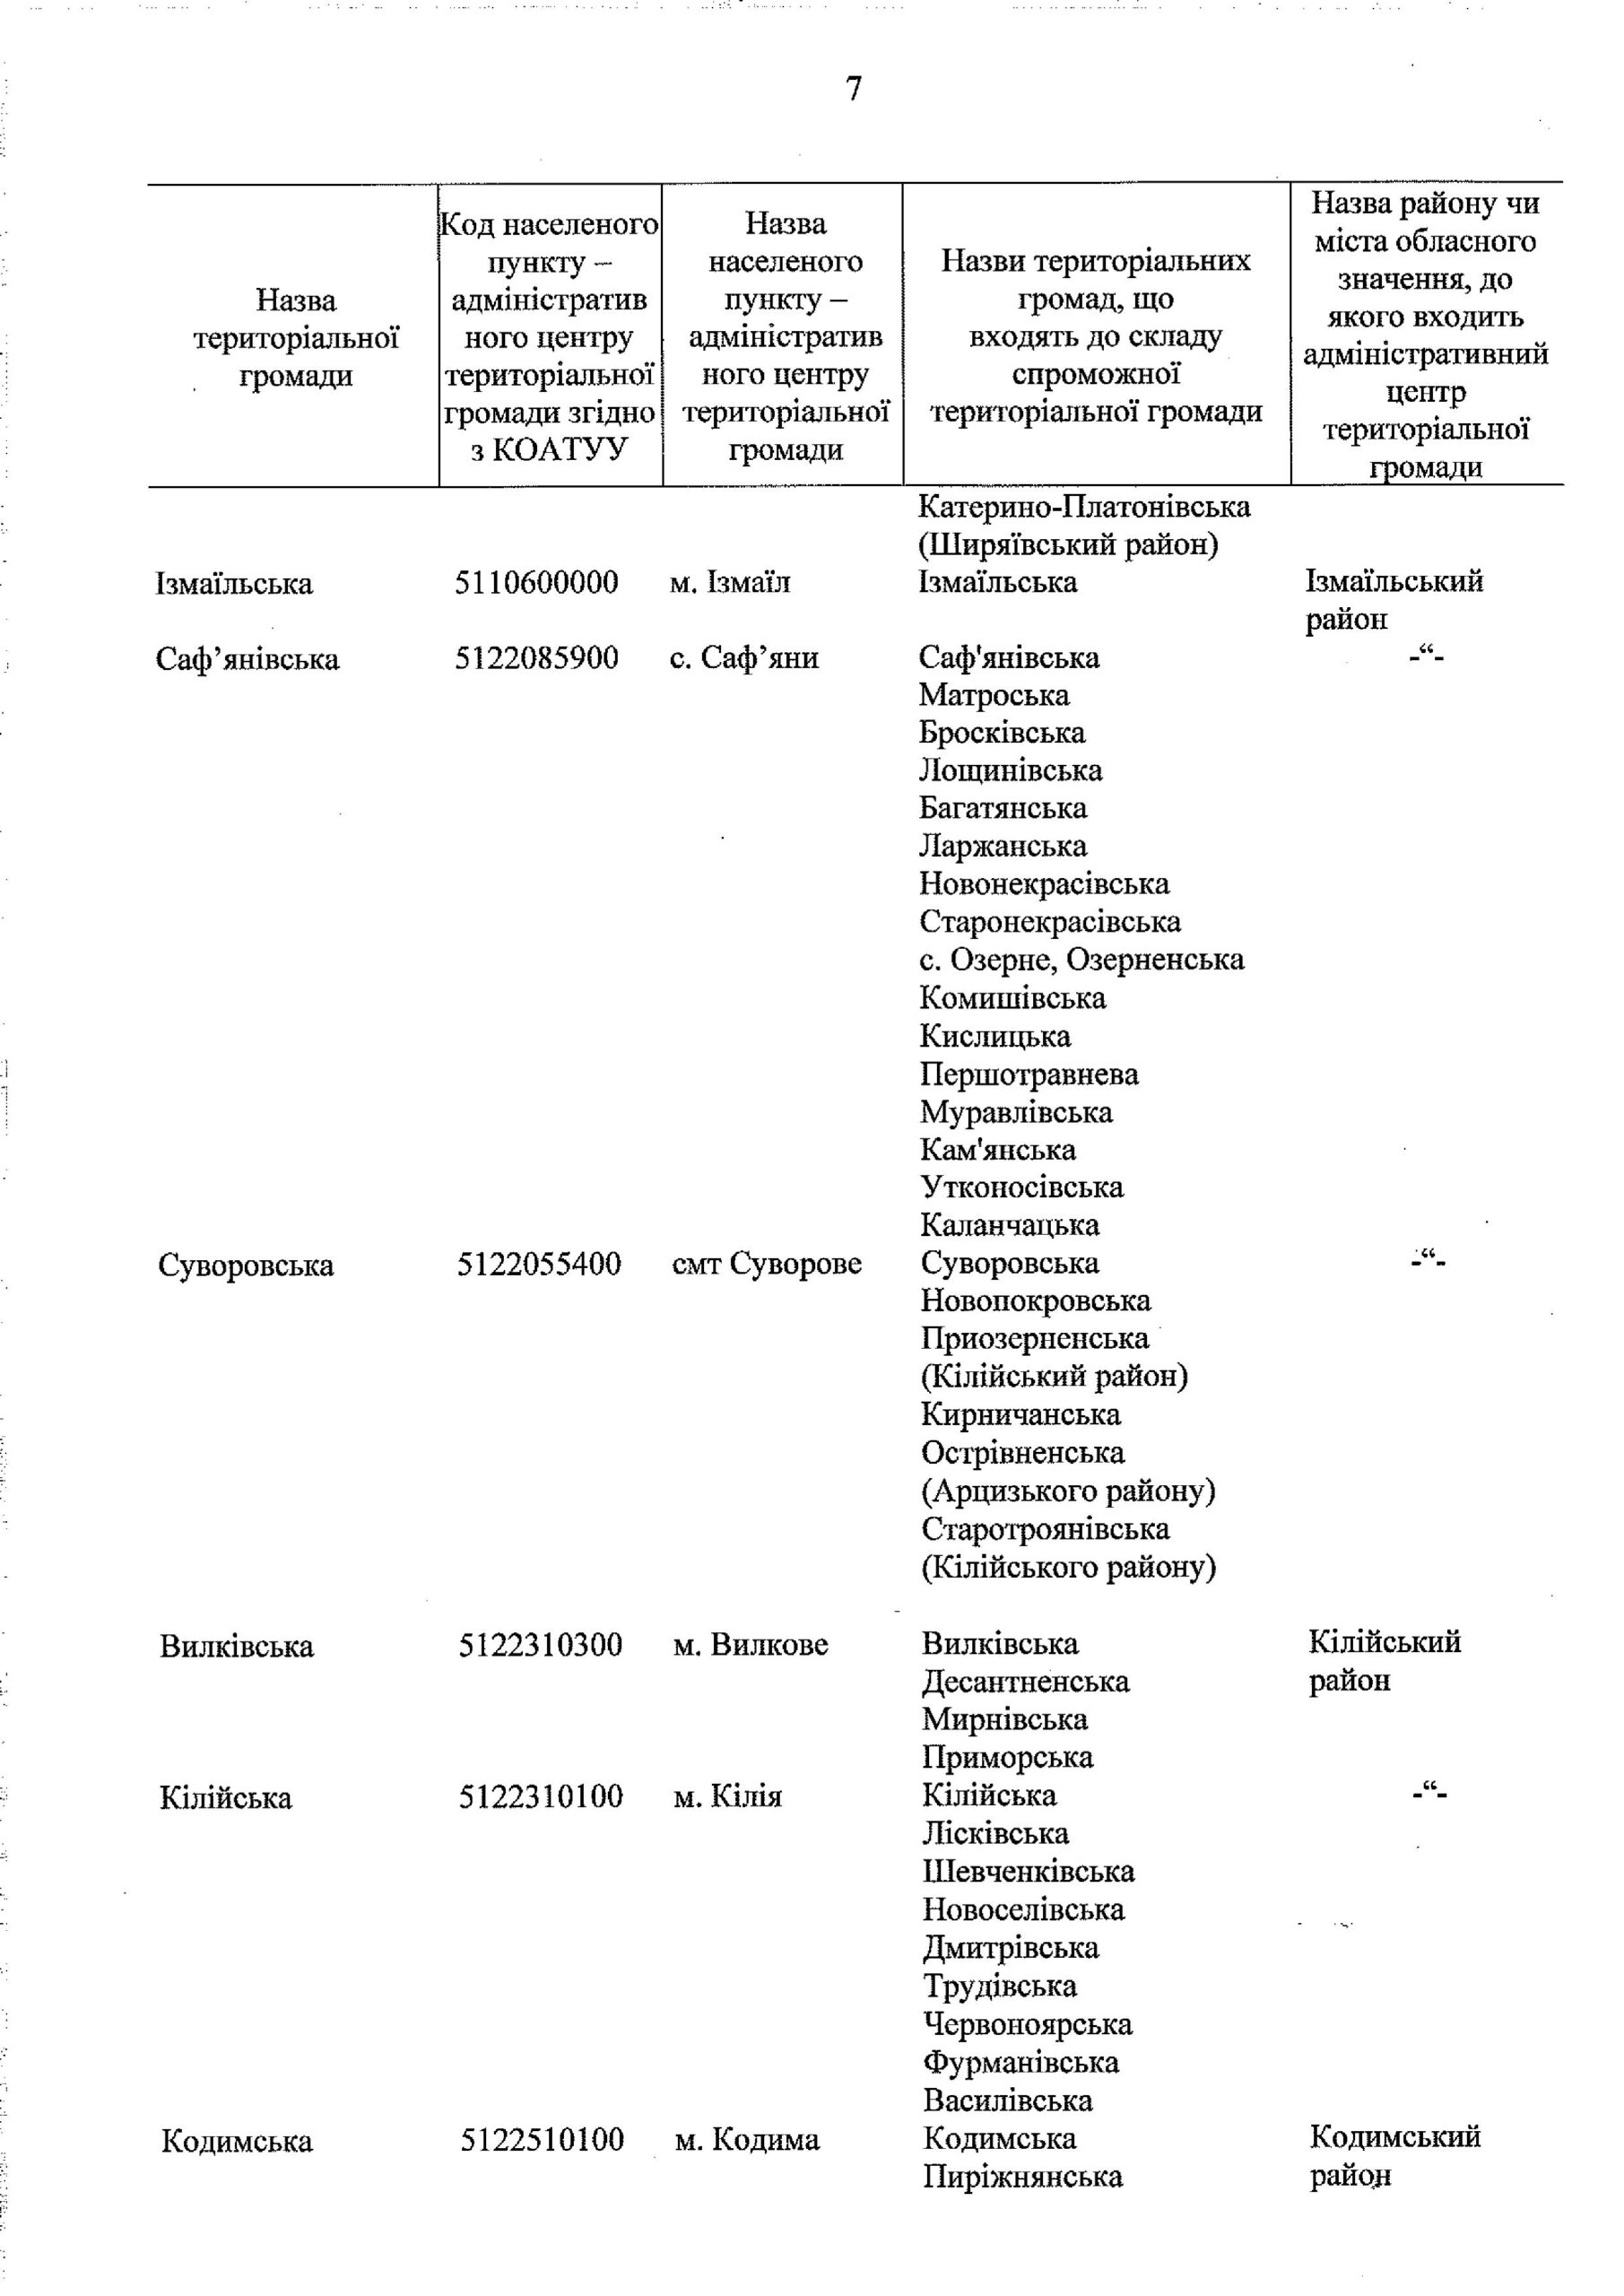 Кабмин опубликовал утвержденный перспективный план формирования ОТГ в Одесской области (документ)